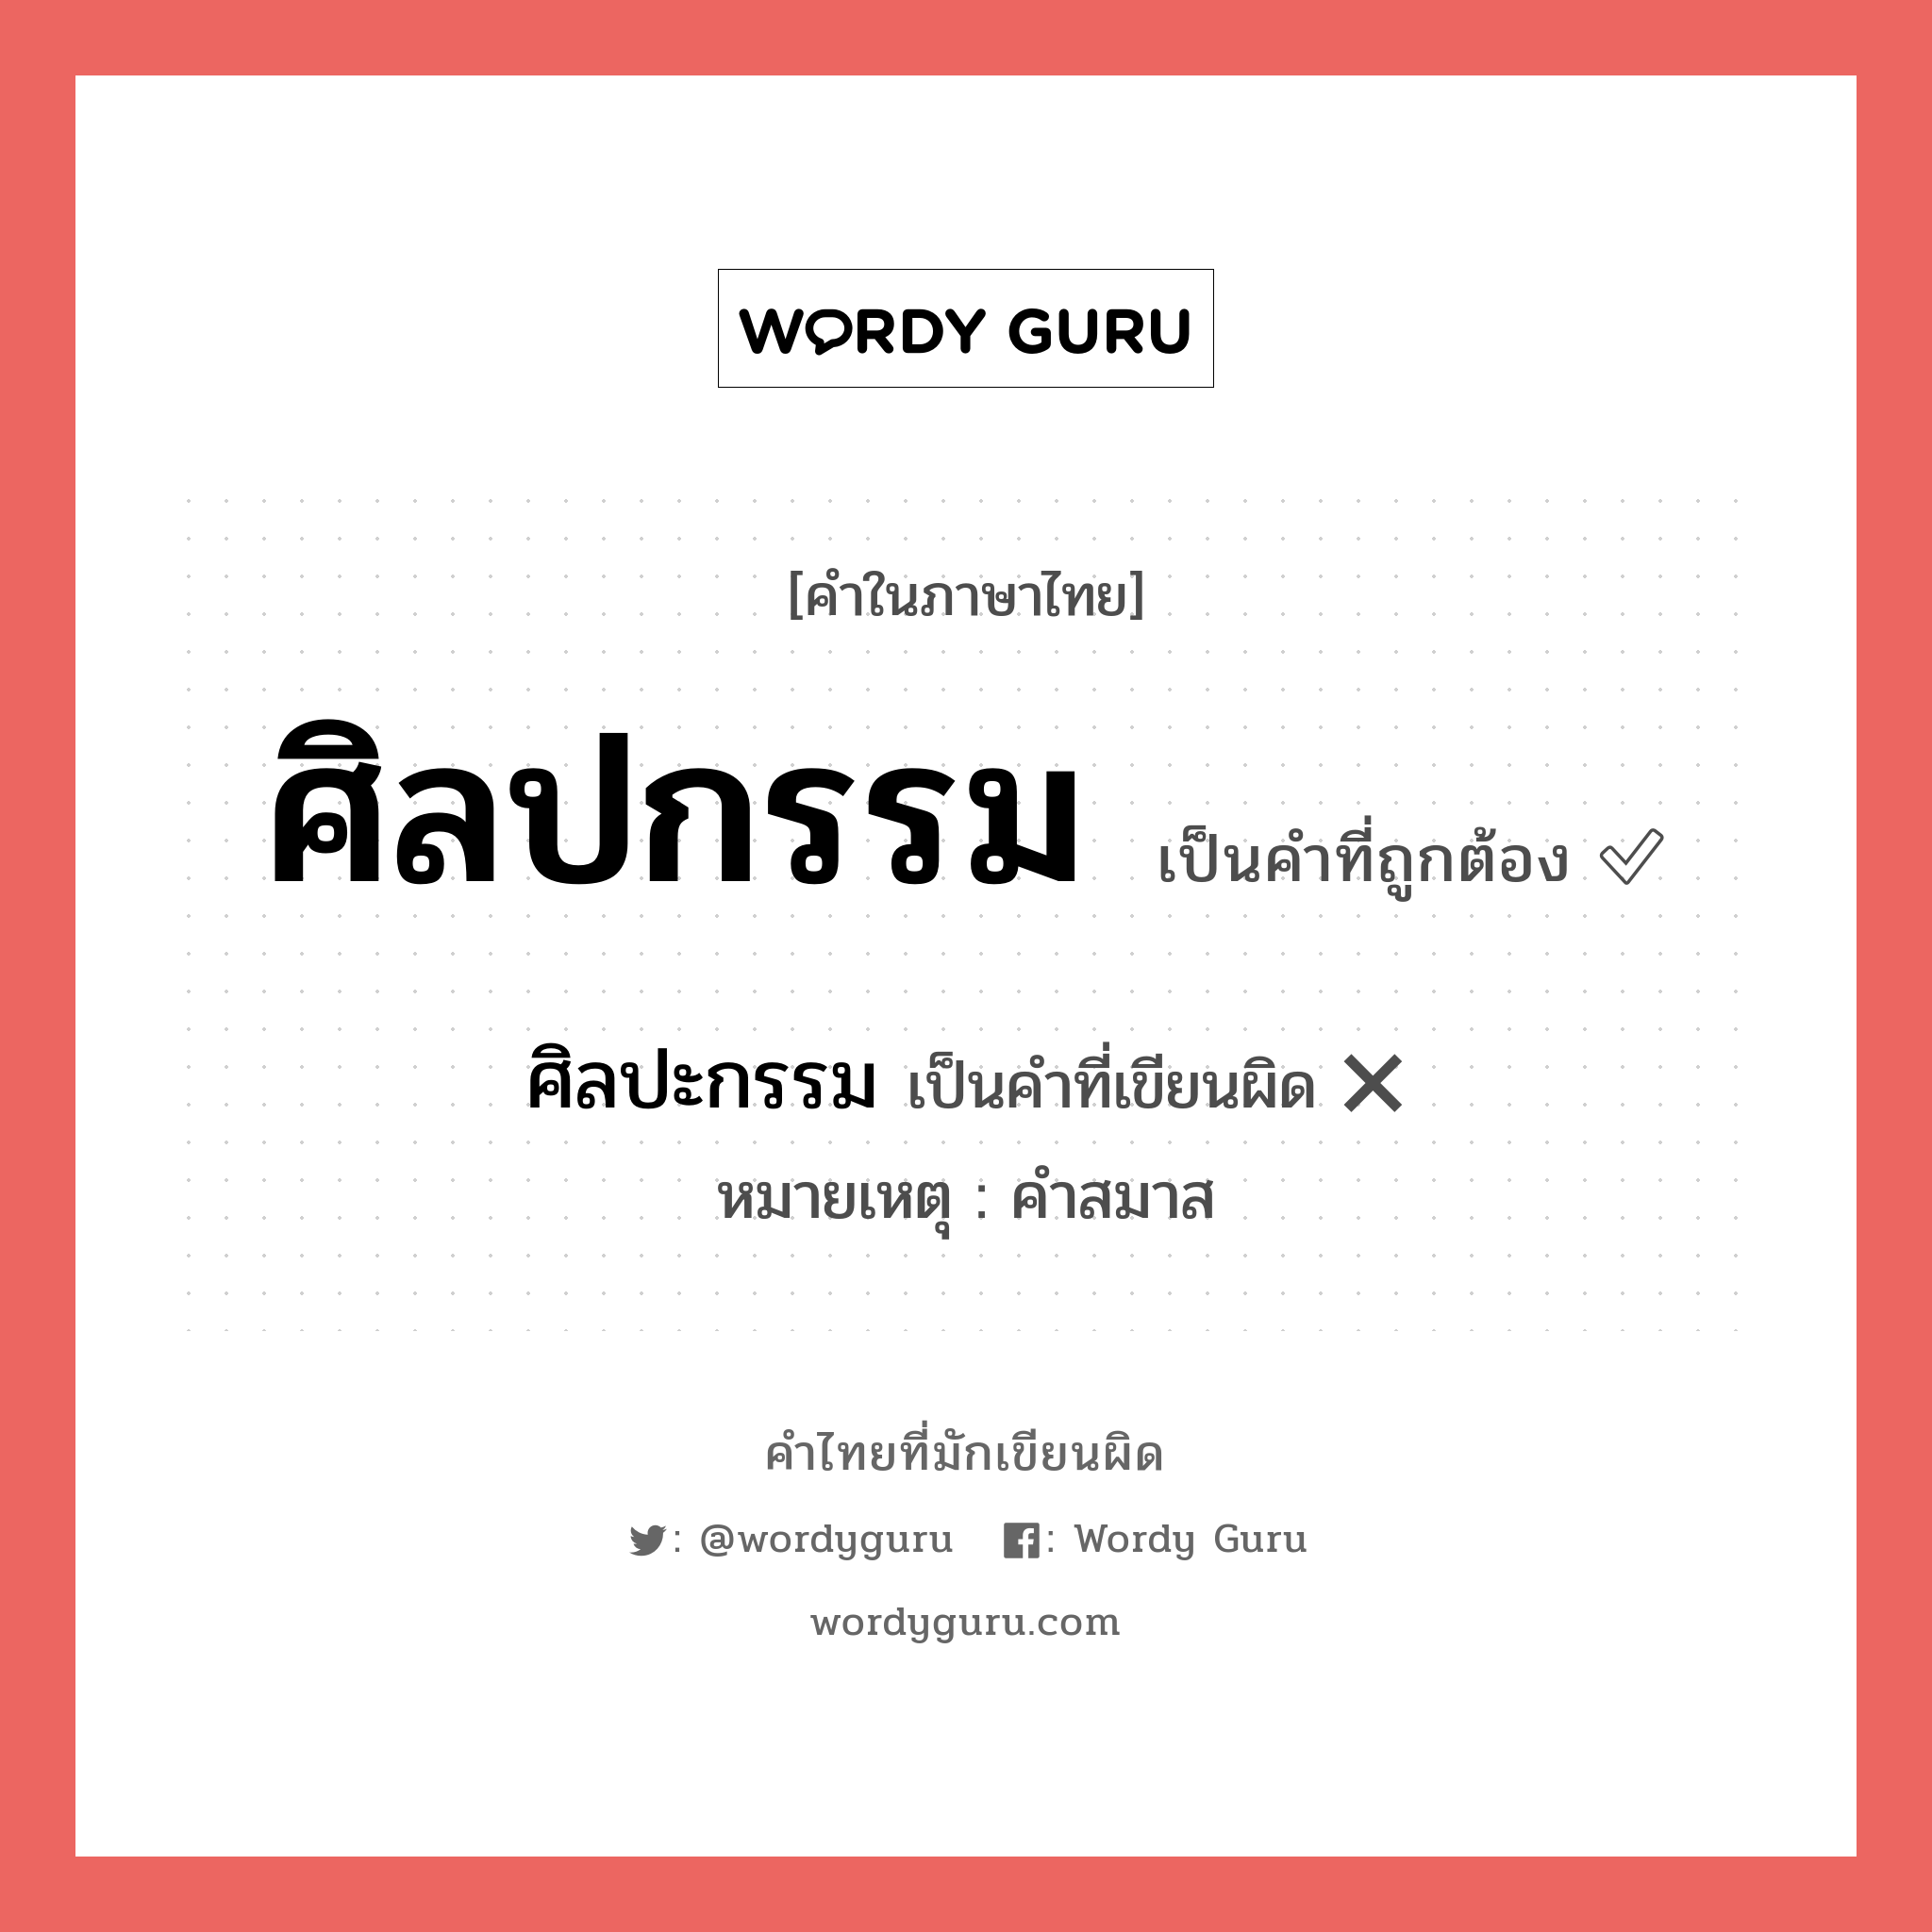 ศิลปกรรม หรือ ศิลปะกรรม คำไหนเขียนถูก?, คำในภาษาไทยที่มักเขียนผิด ศิลปกรรม คำที่ผิด ❌ ศิลปะกรรม หมายเหตุ คำสมาส